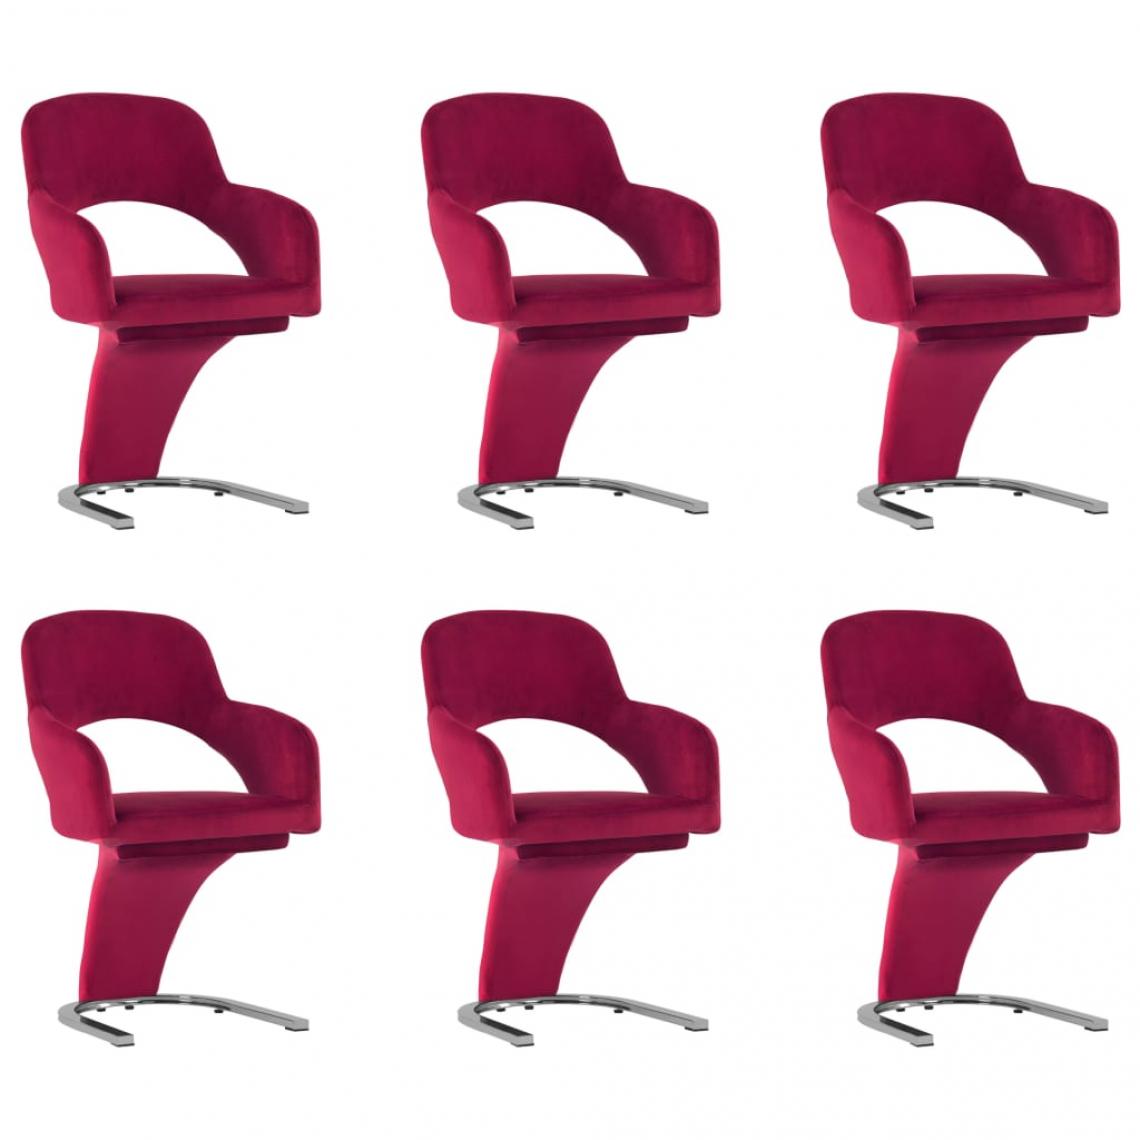 Decoshop26 - Lot de 6 chaises de salle à manger cuisine design moderne velours rouge bordeaux CDS022826 - Chaises